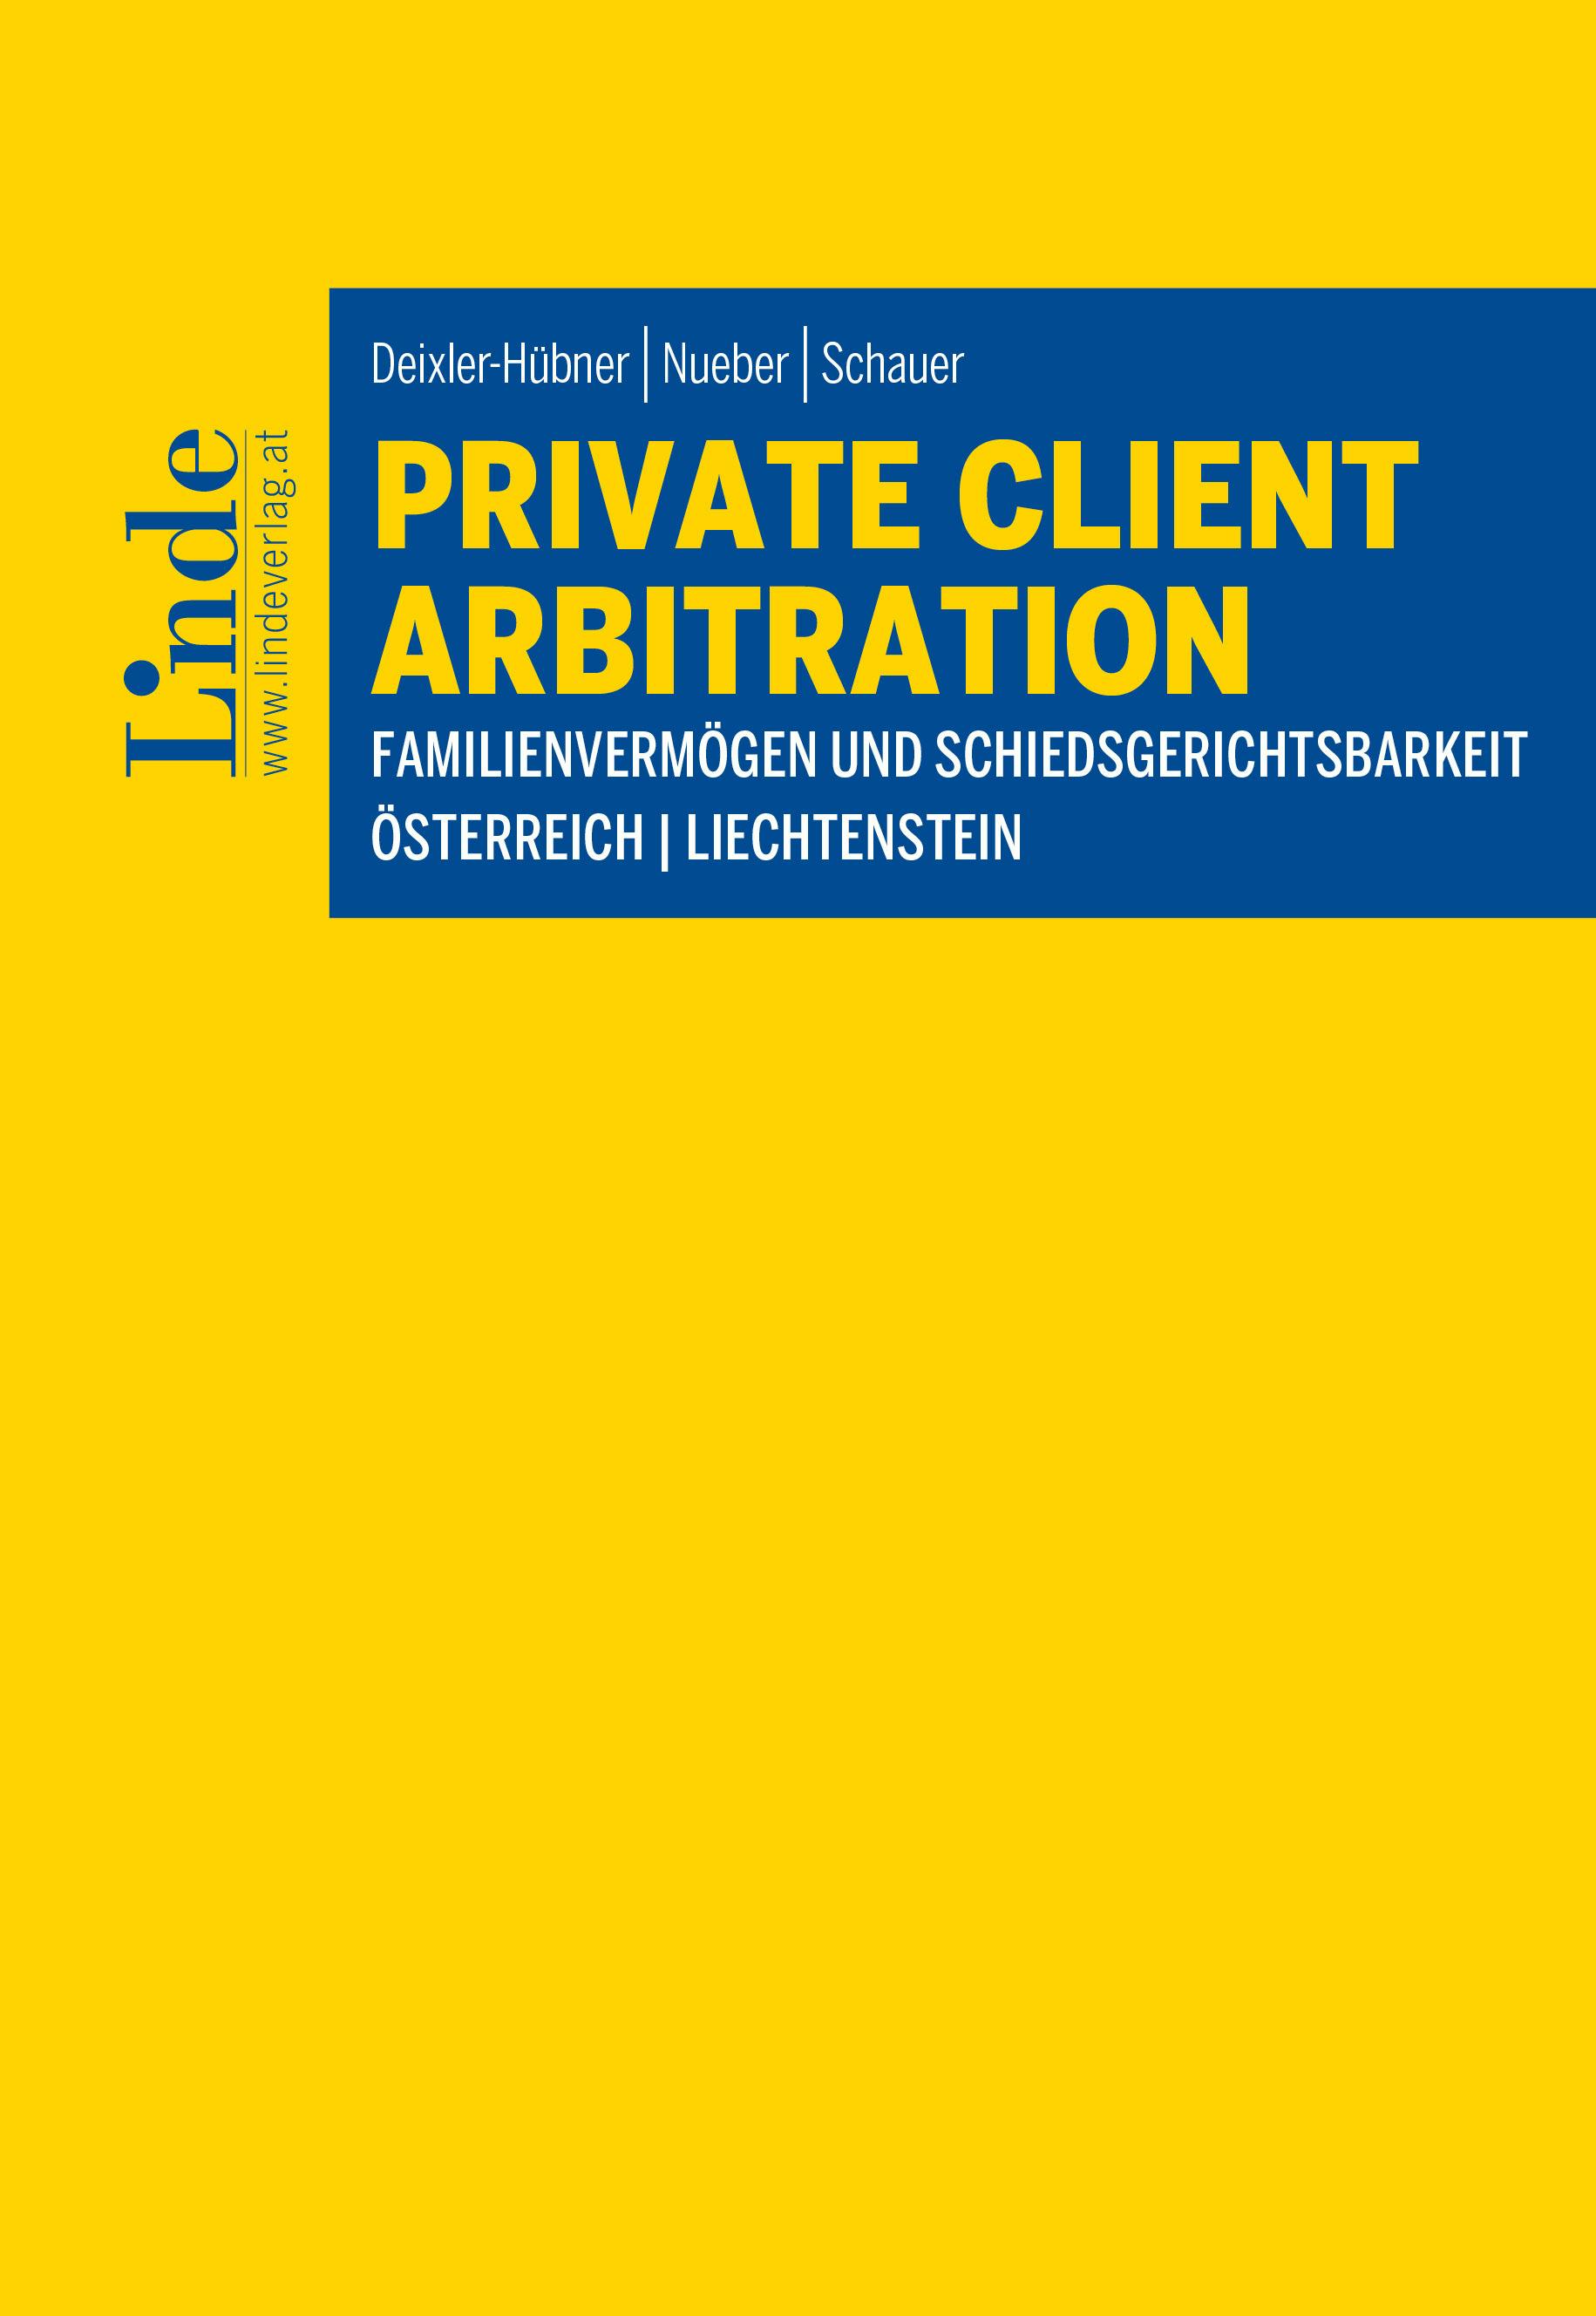 Deixler-Hübner | Nueber | Schauer
Private Client Arbitration - Familienvermögen und Schiedsgerichtsbarkeit